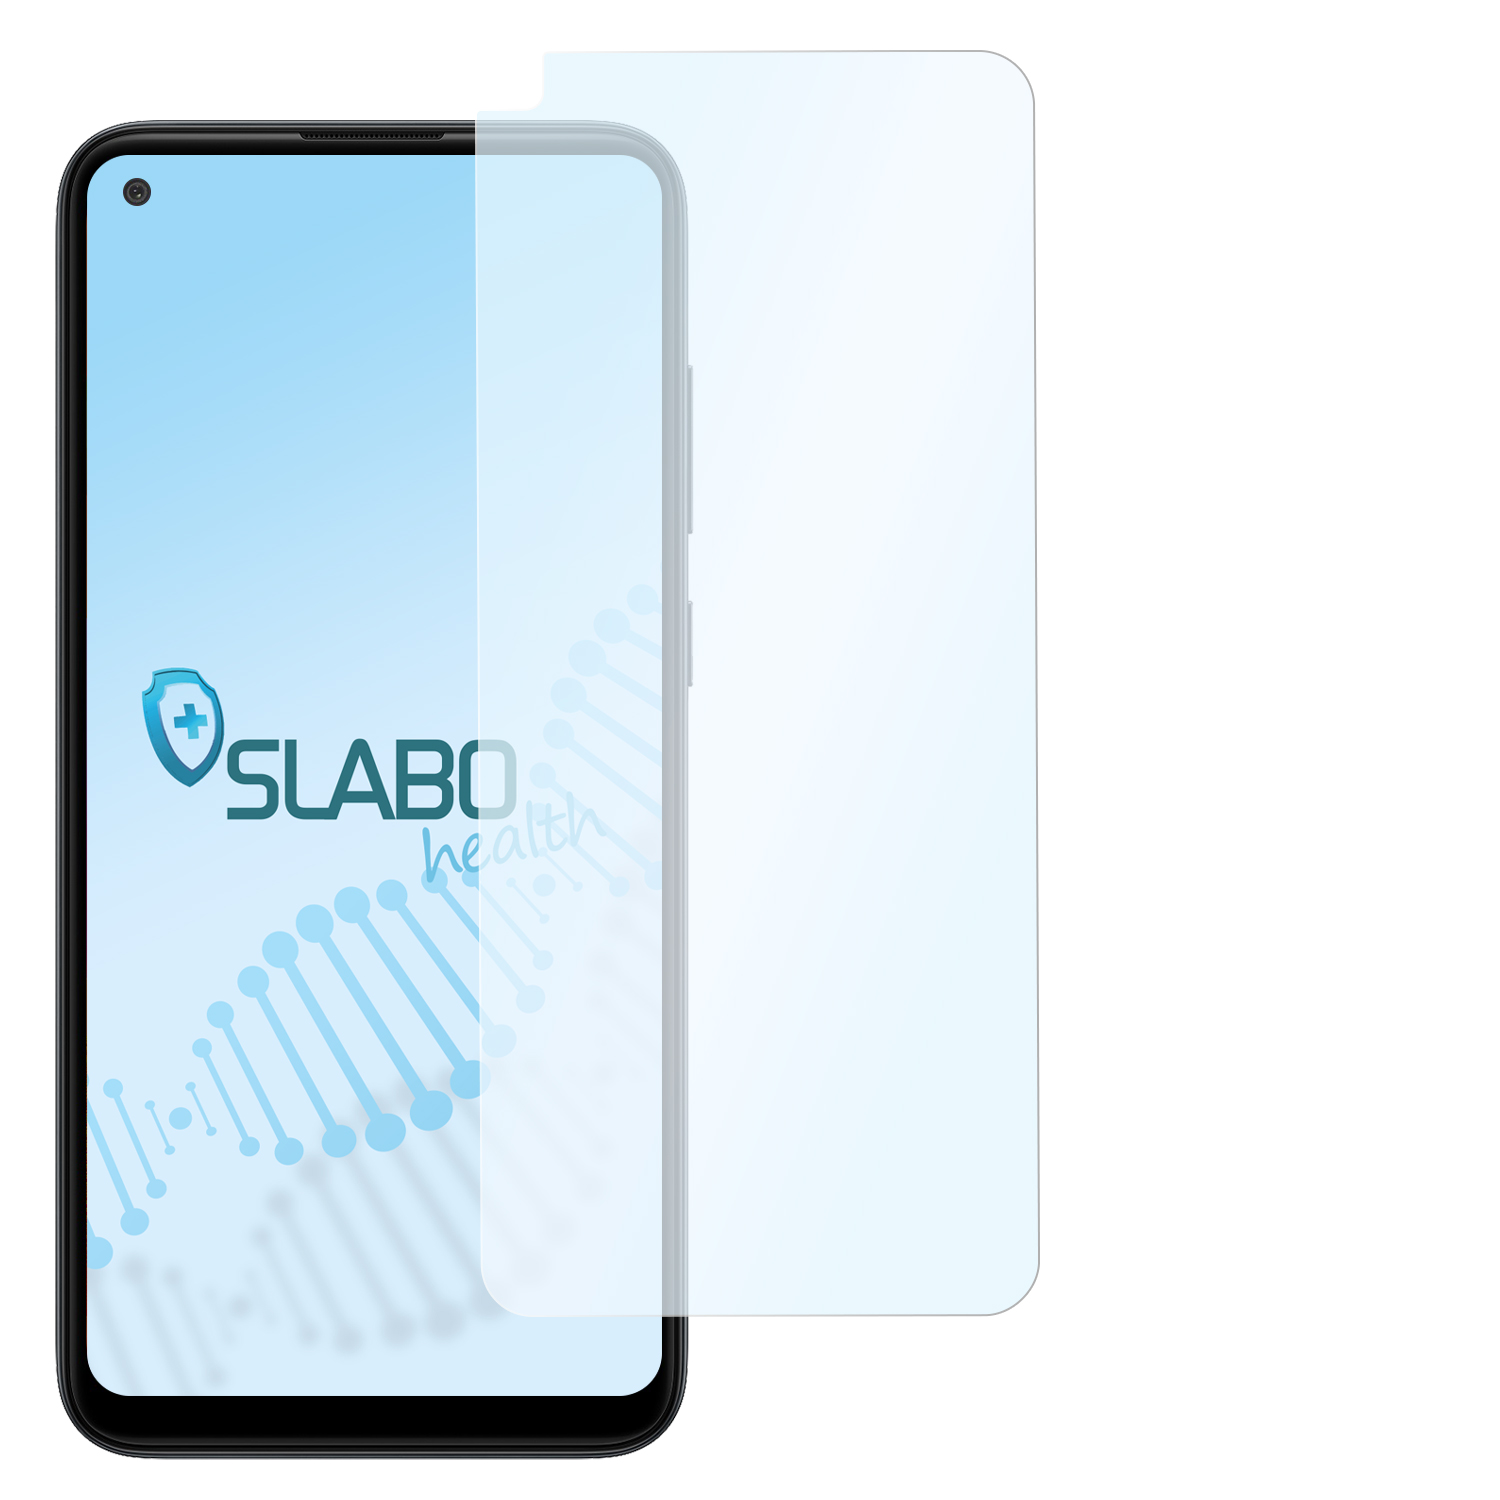 SLABO antibakterielle M11) Galaxy Hybridglasfolie Galaxy Samsung flexible A11 | Displayschutz(für